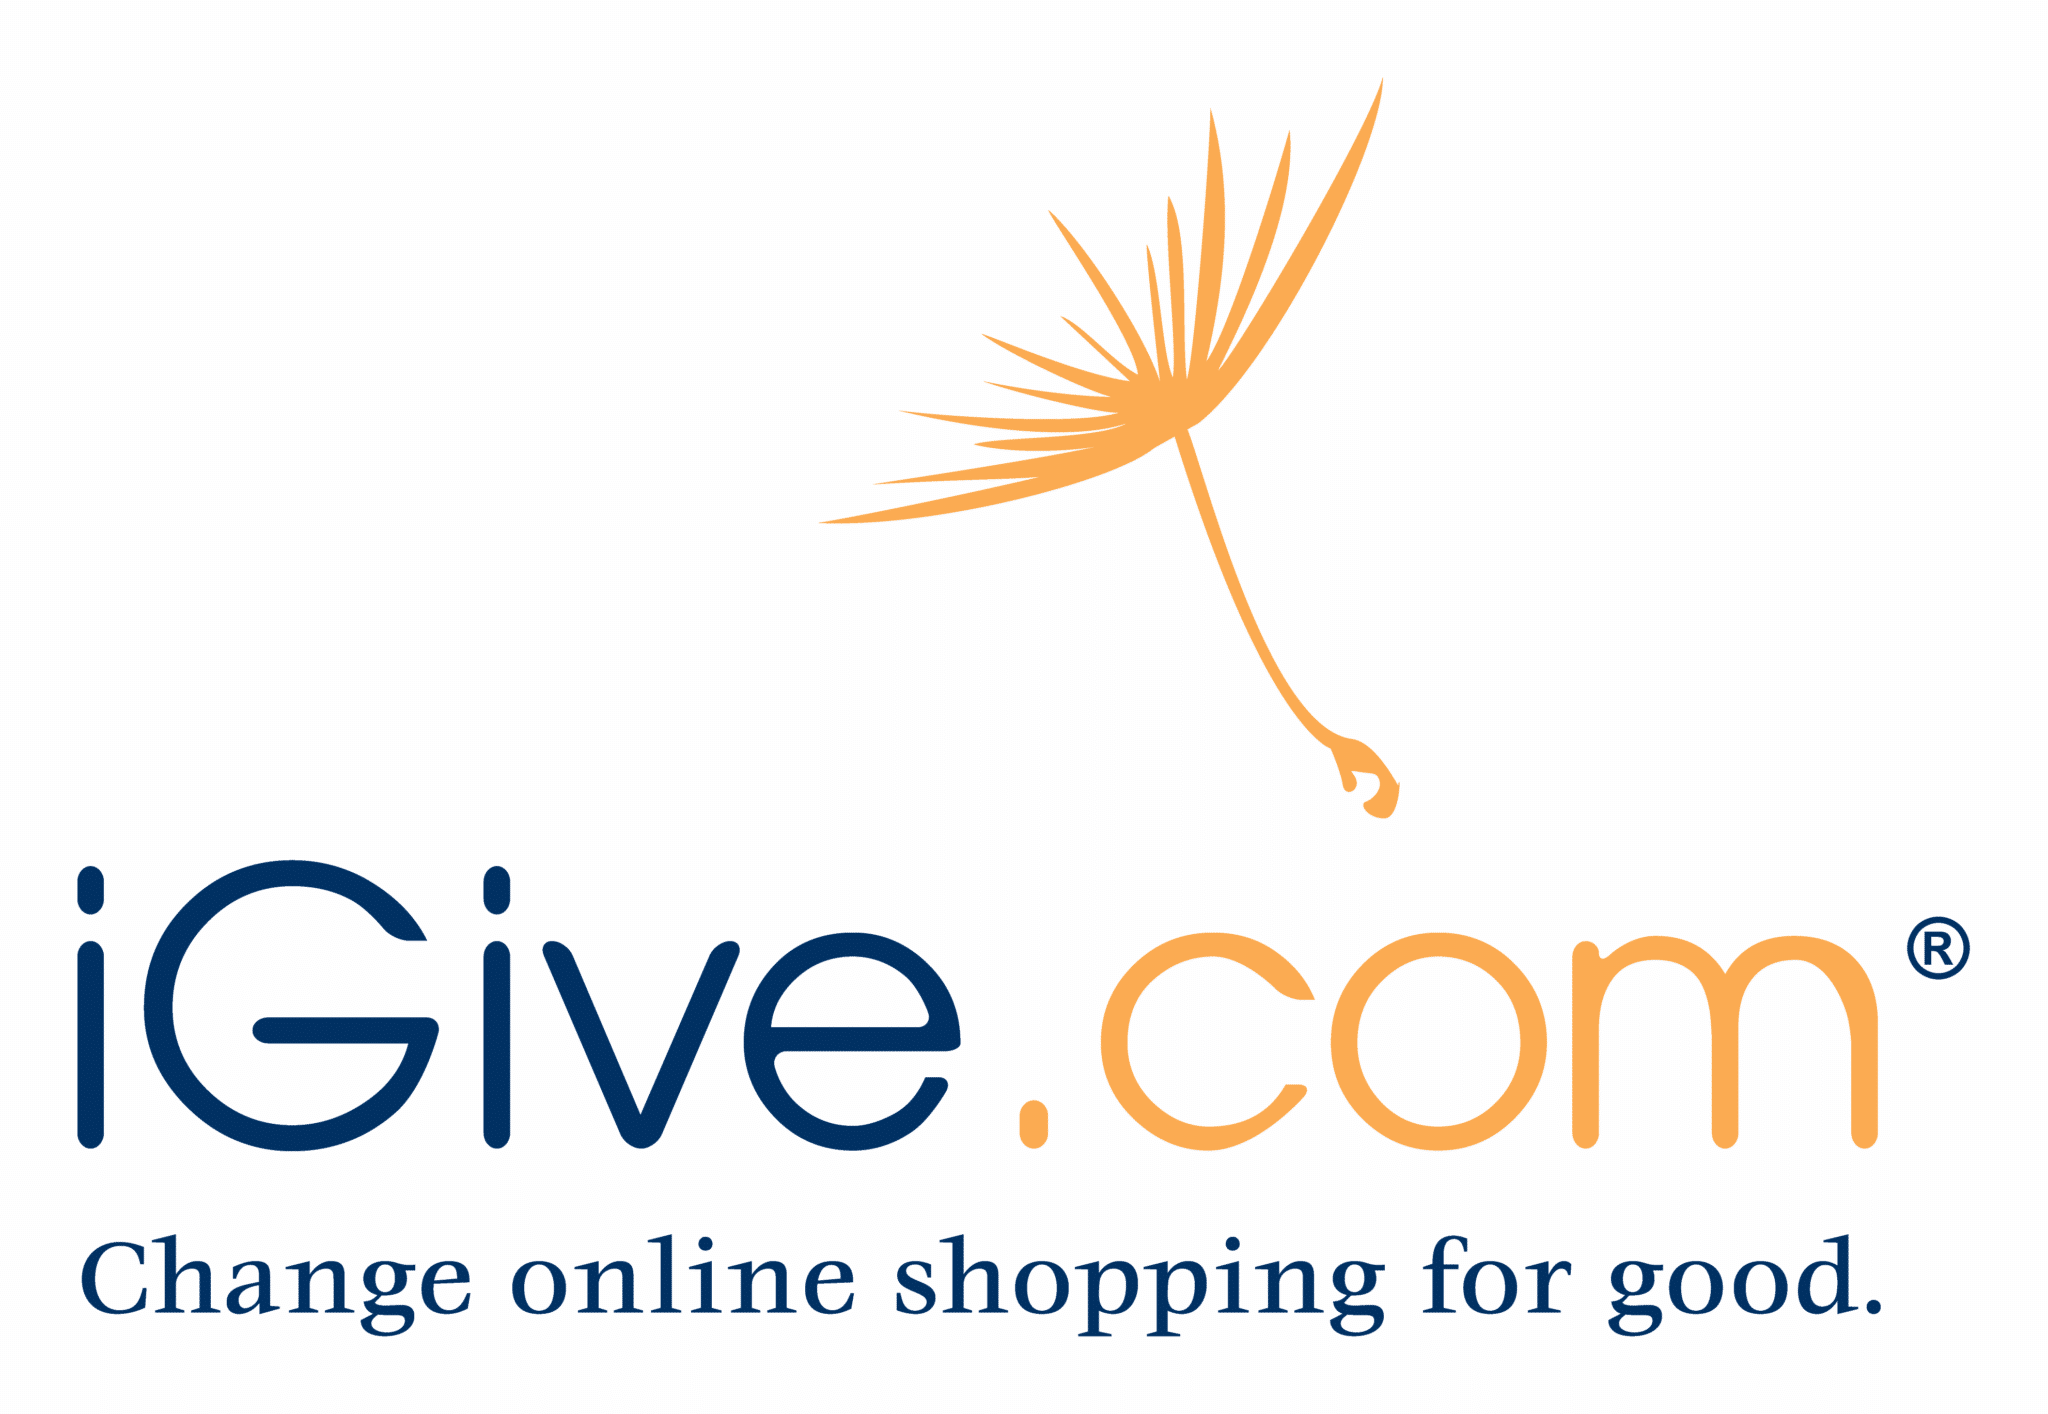 iGive.com